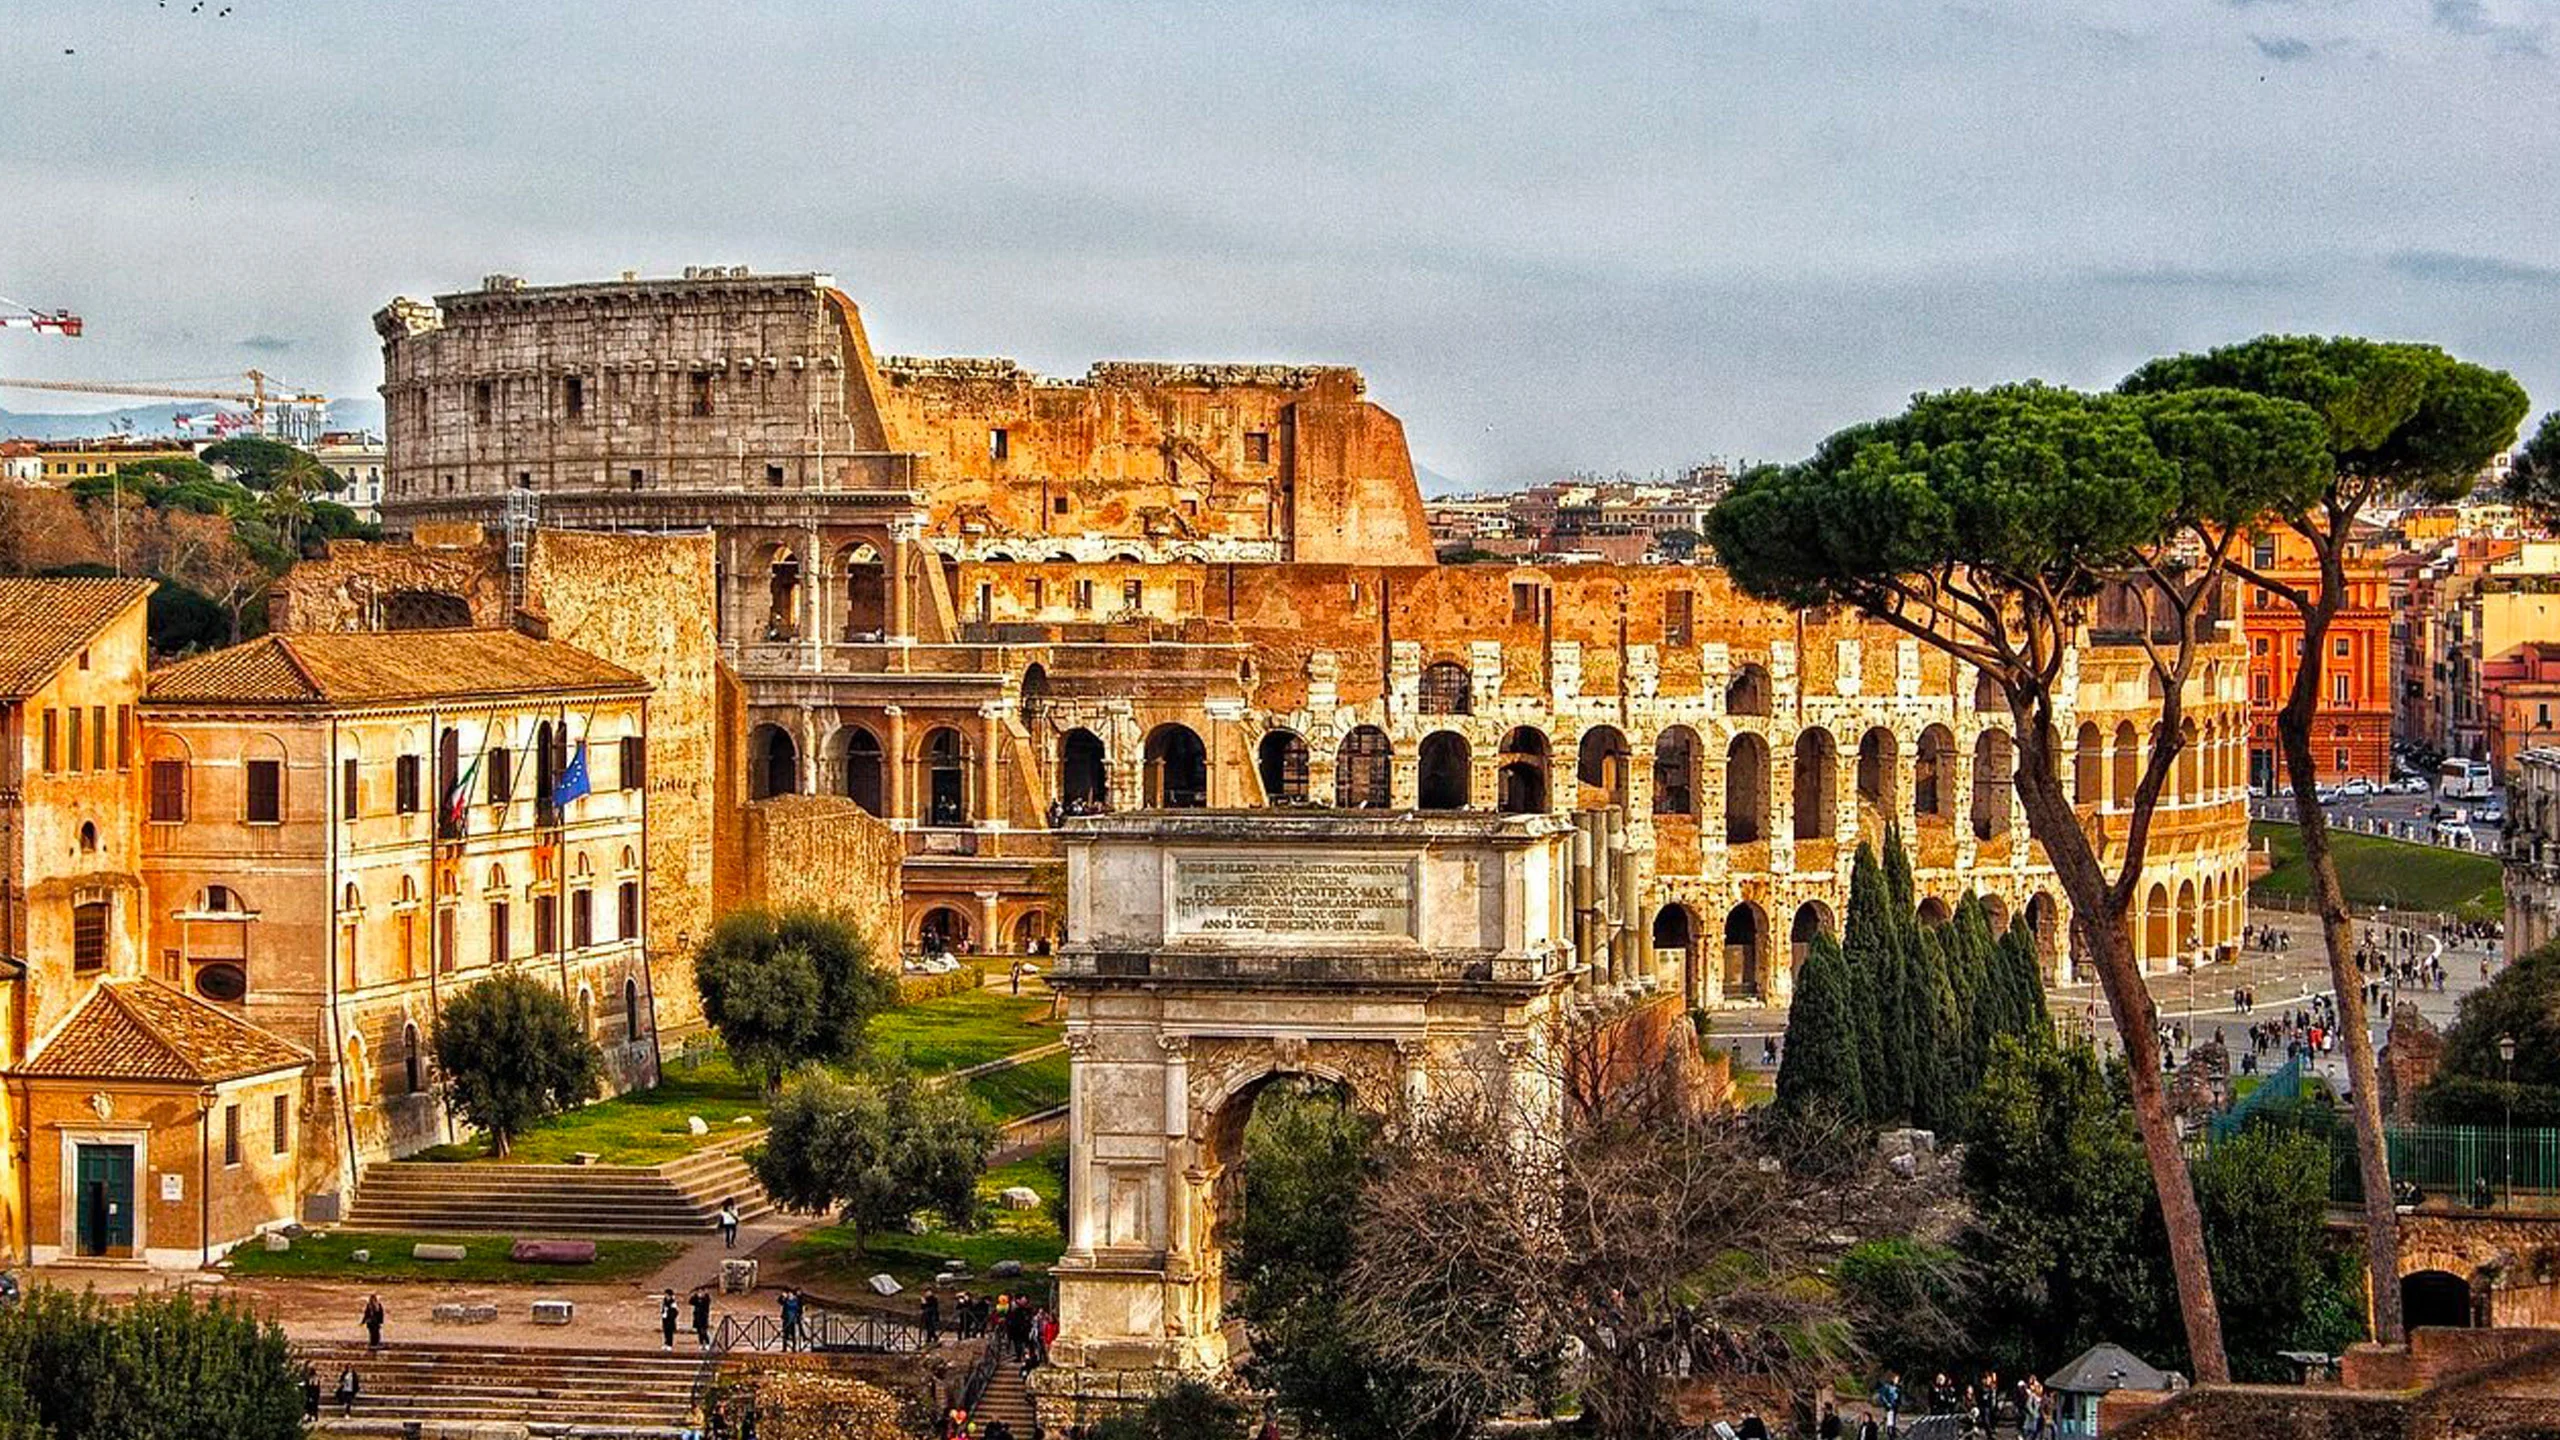 El coliseo romano abre por primera vez sus pasillos subterráneos a los turistas